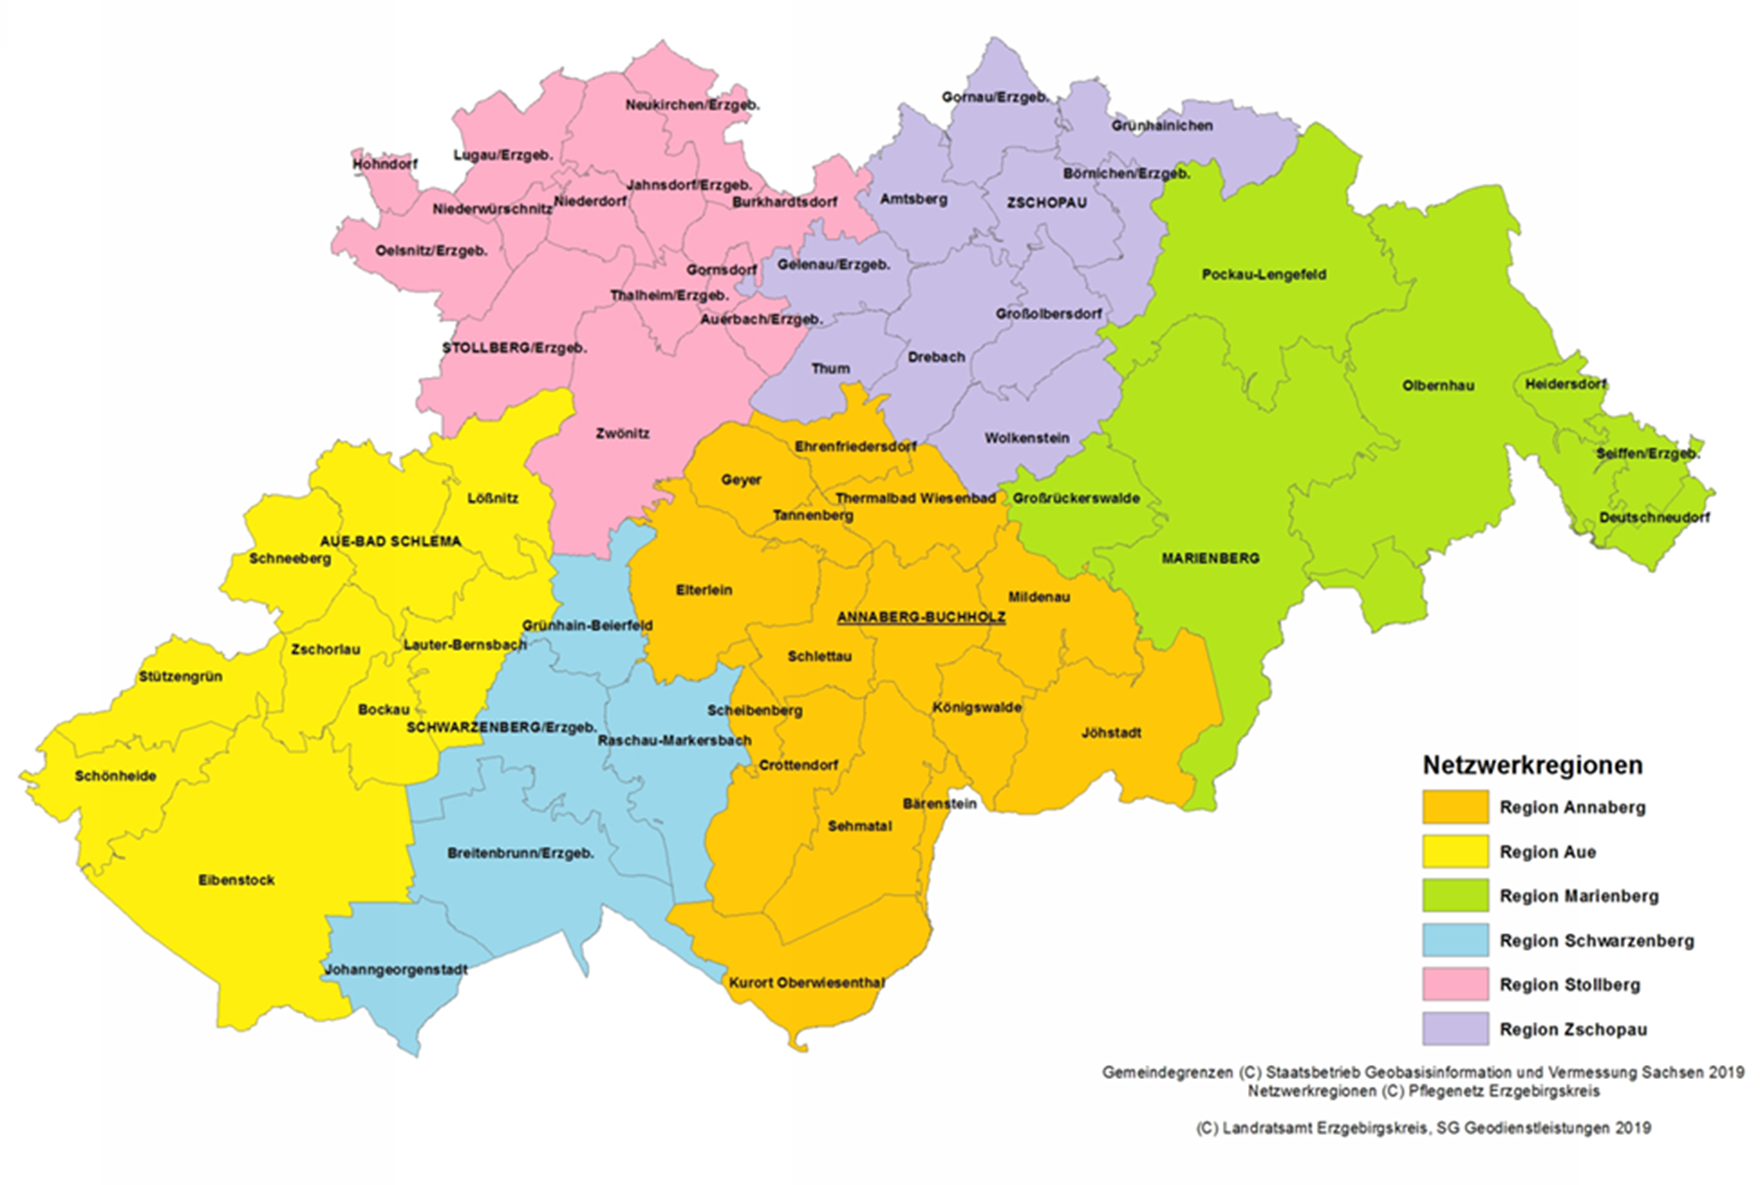 Die Abbildung zeigt die sechs Netzwerkregionen farblich abgegrenzt in Form einer Landkarte.